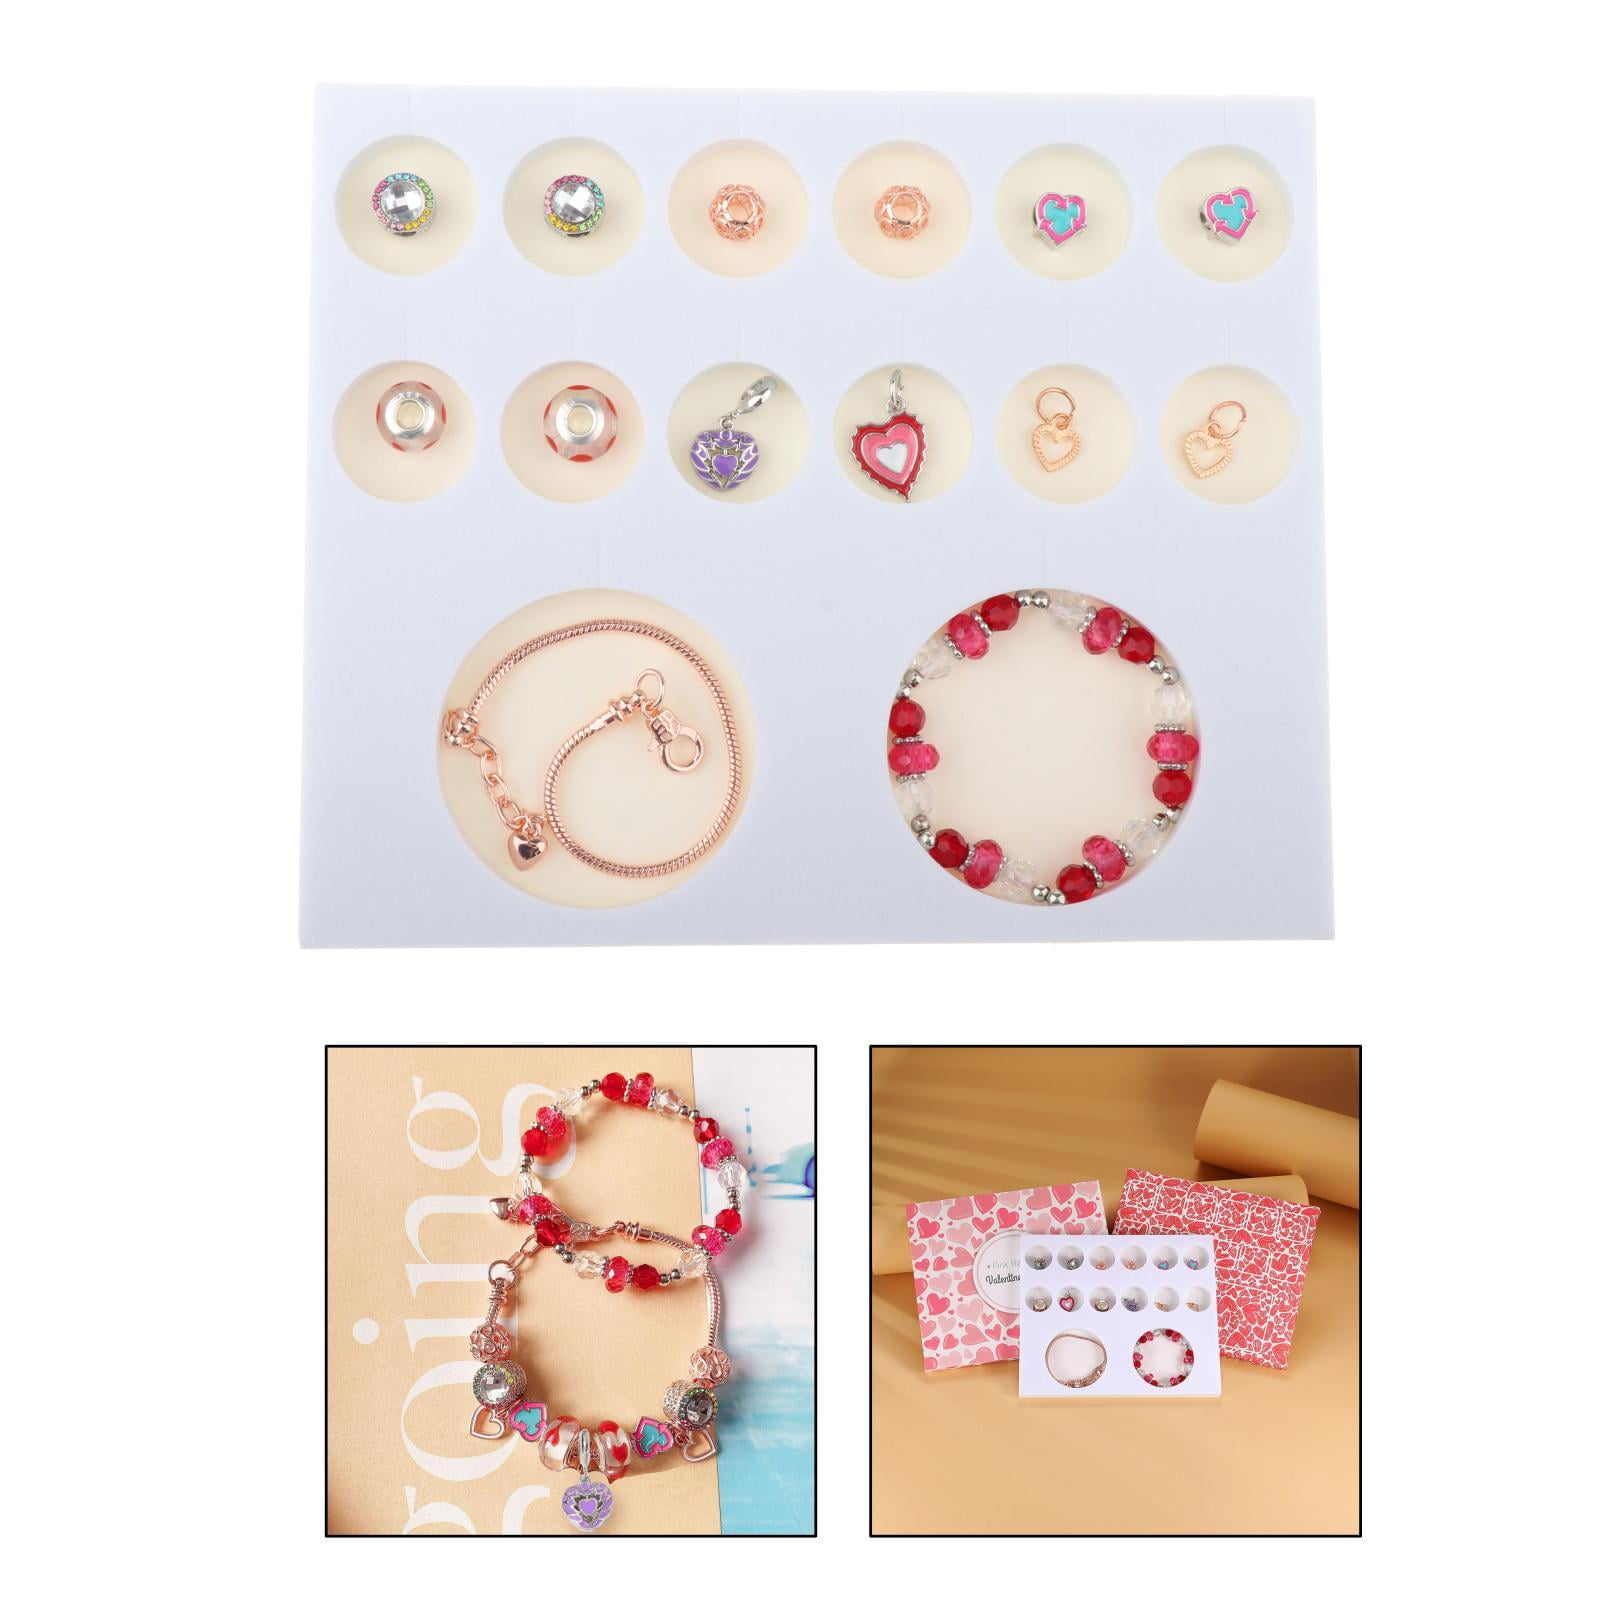 Kelistom 316L Stainless Steel Love Heart Charm Bracelet for Women Teen  Girls Rom | eBay